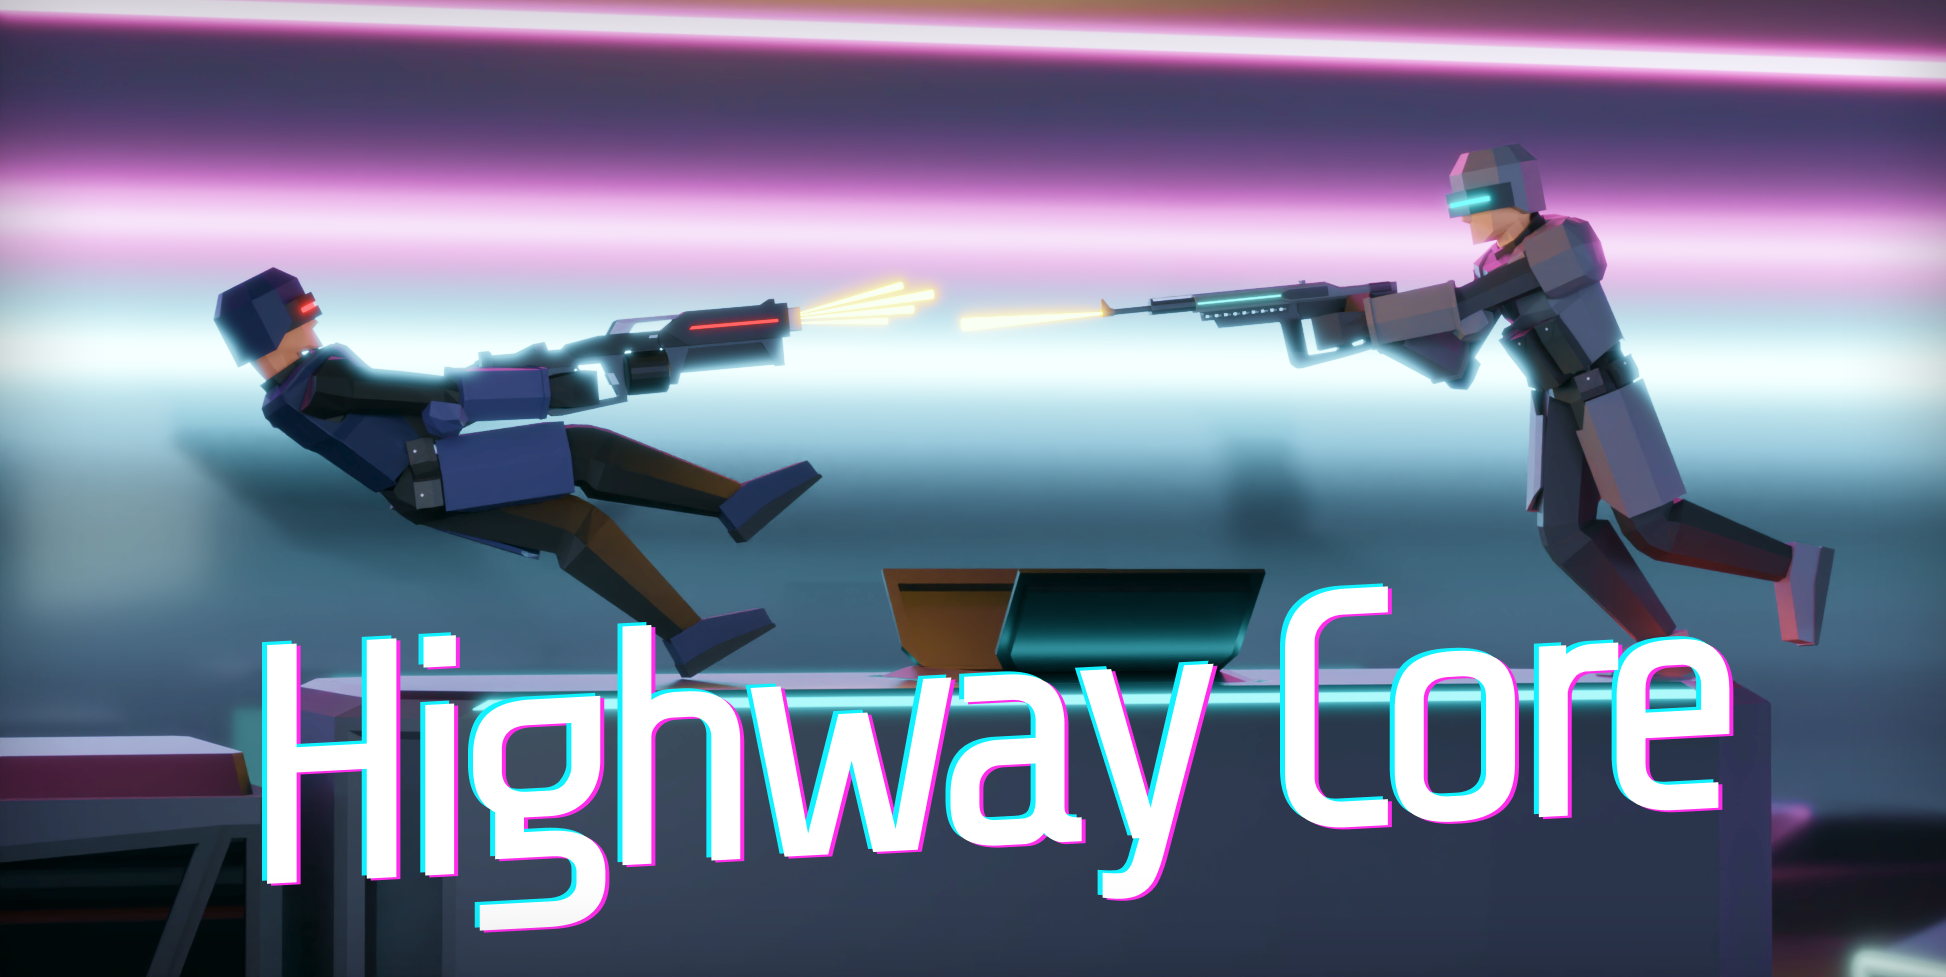 Highway Core